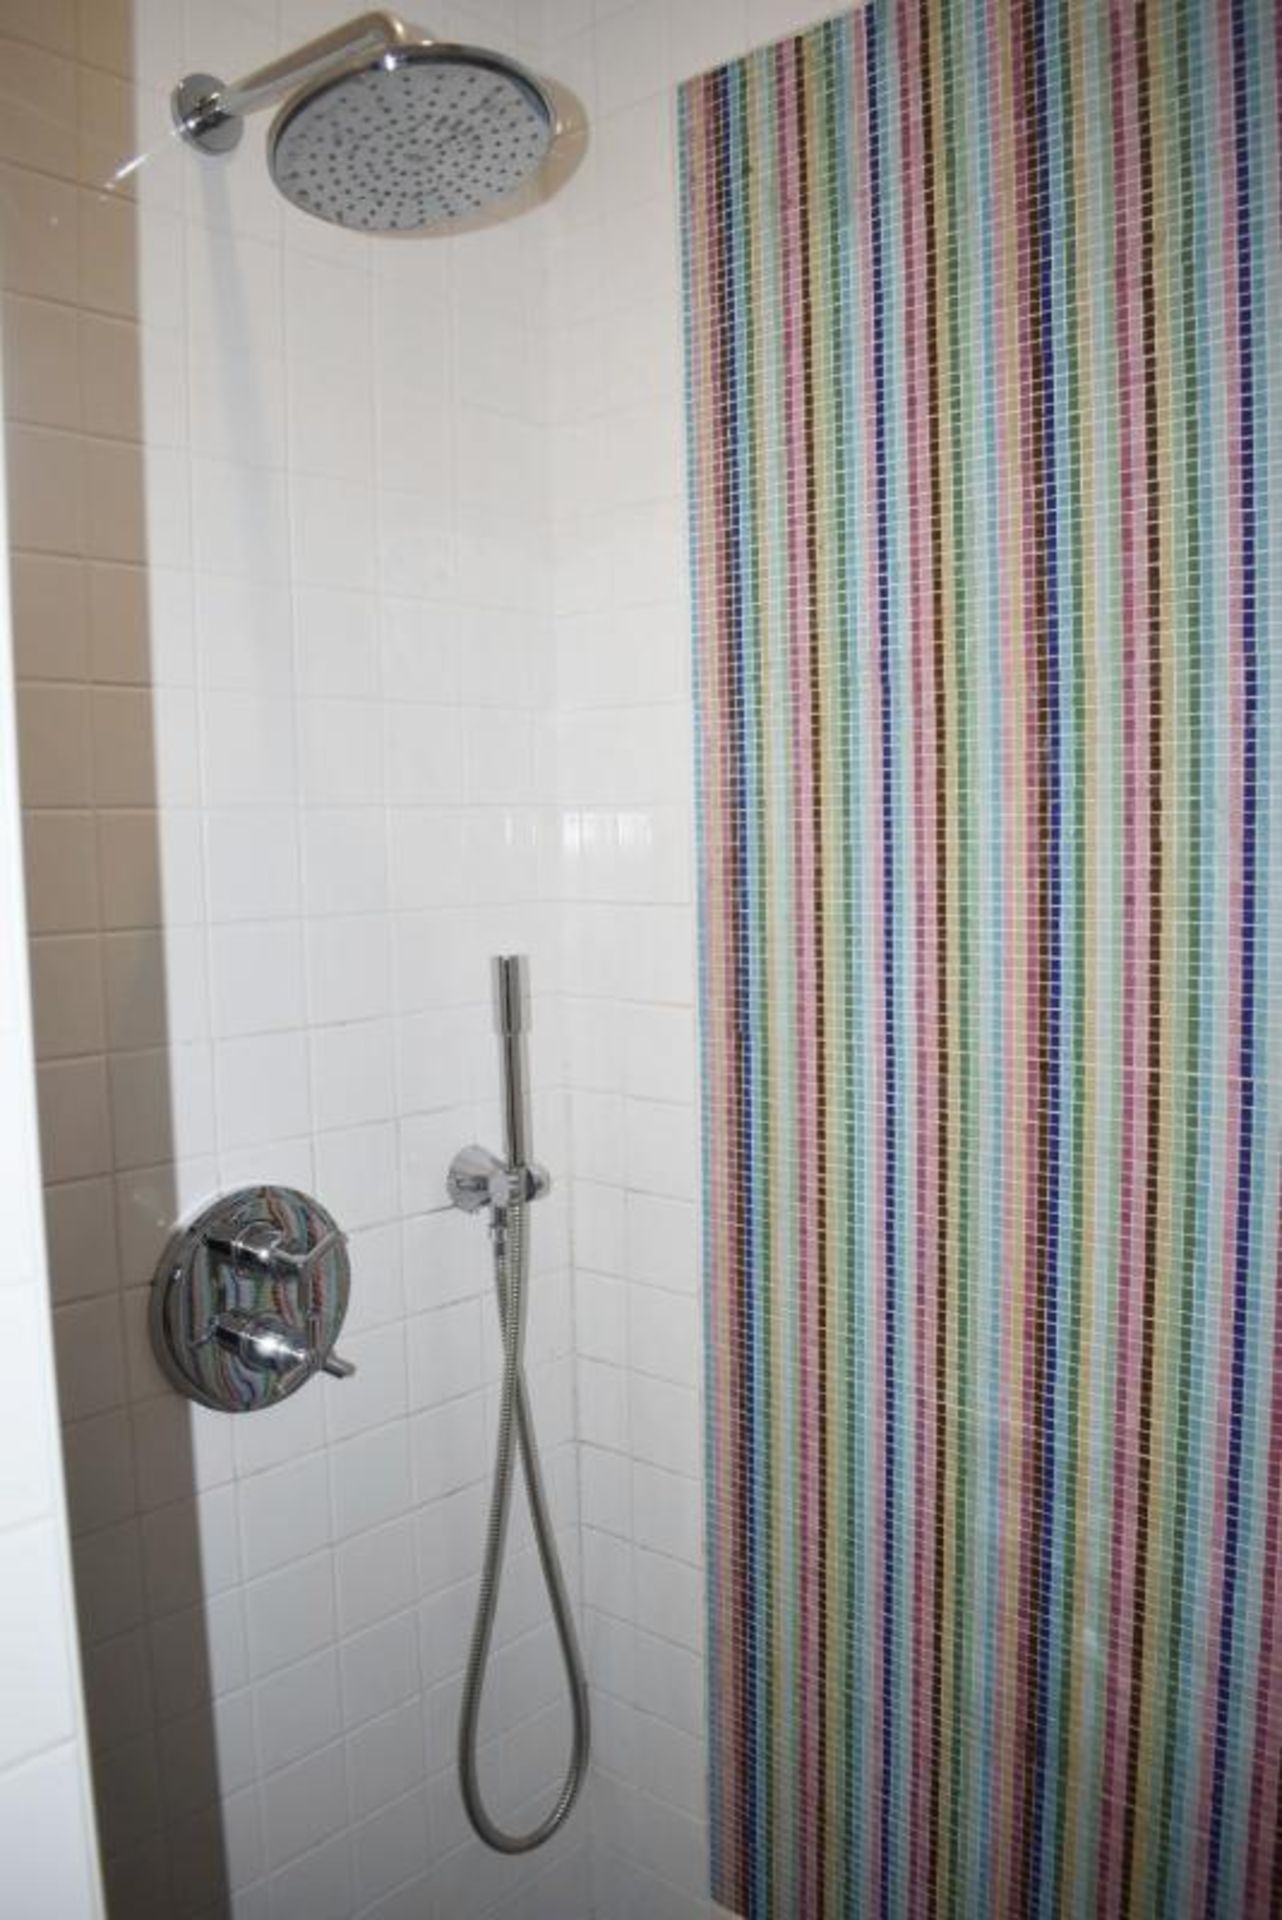 1 x Bathroom Suite - Includes: Wall Hung Toilet, Shower With Door - Sink Basin + 2-Door Vanity Unit - Image 3 of 7